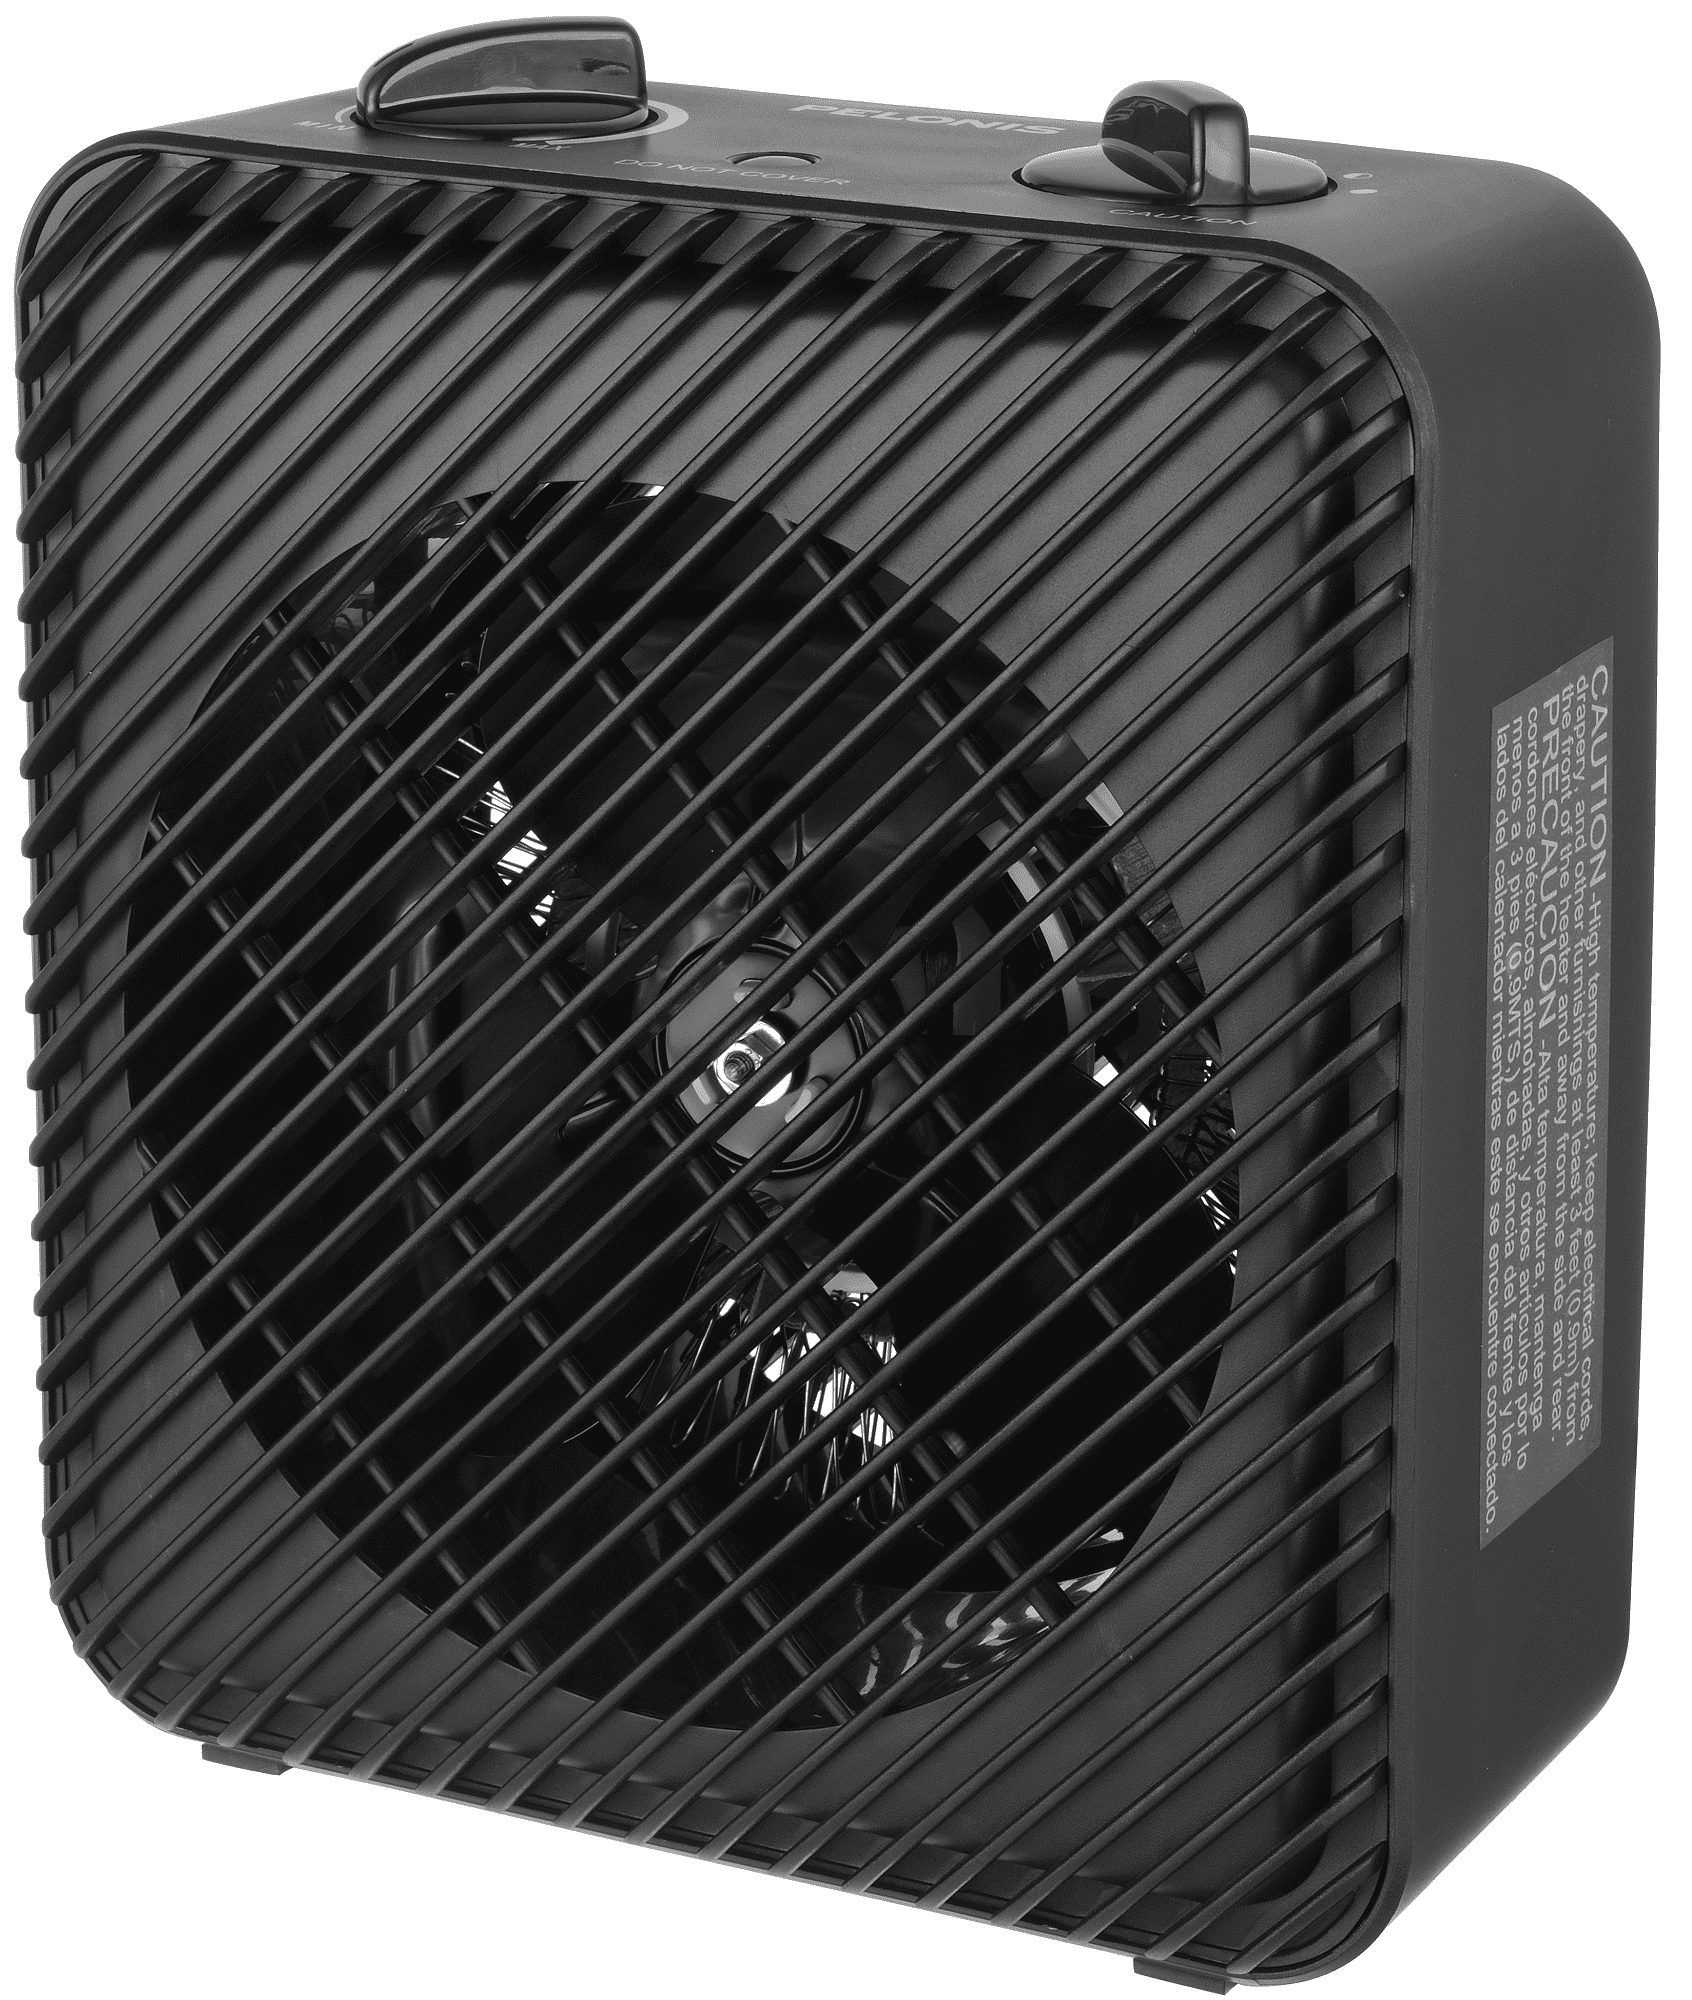 Pelonis 1500W 3-Speed Electric Fan-Forced Space Heater, PSH08F1ABB, Black